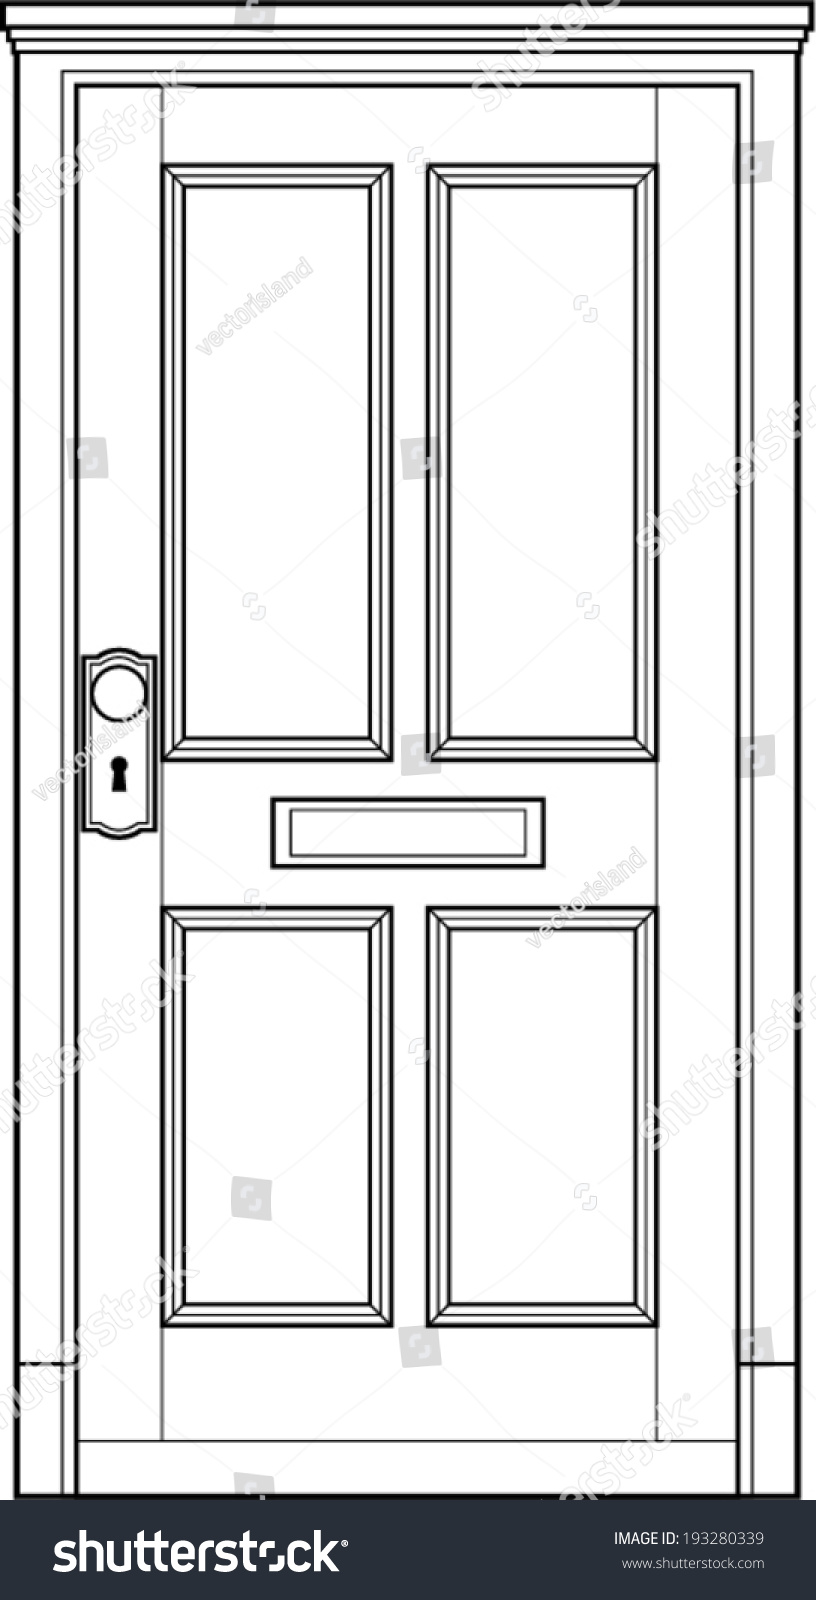 Door Line Art Stock Vector 193280339 Shutterstock